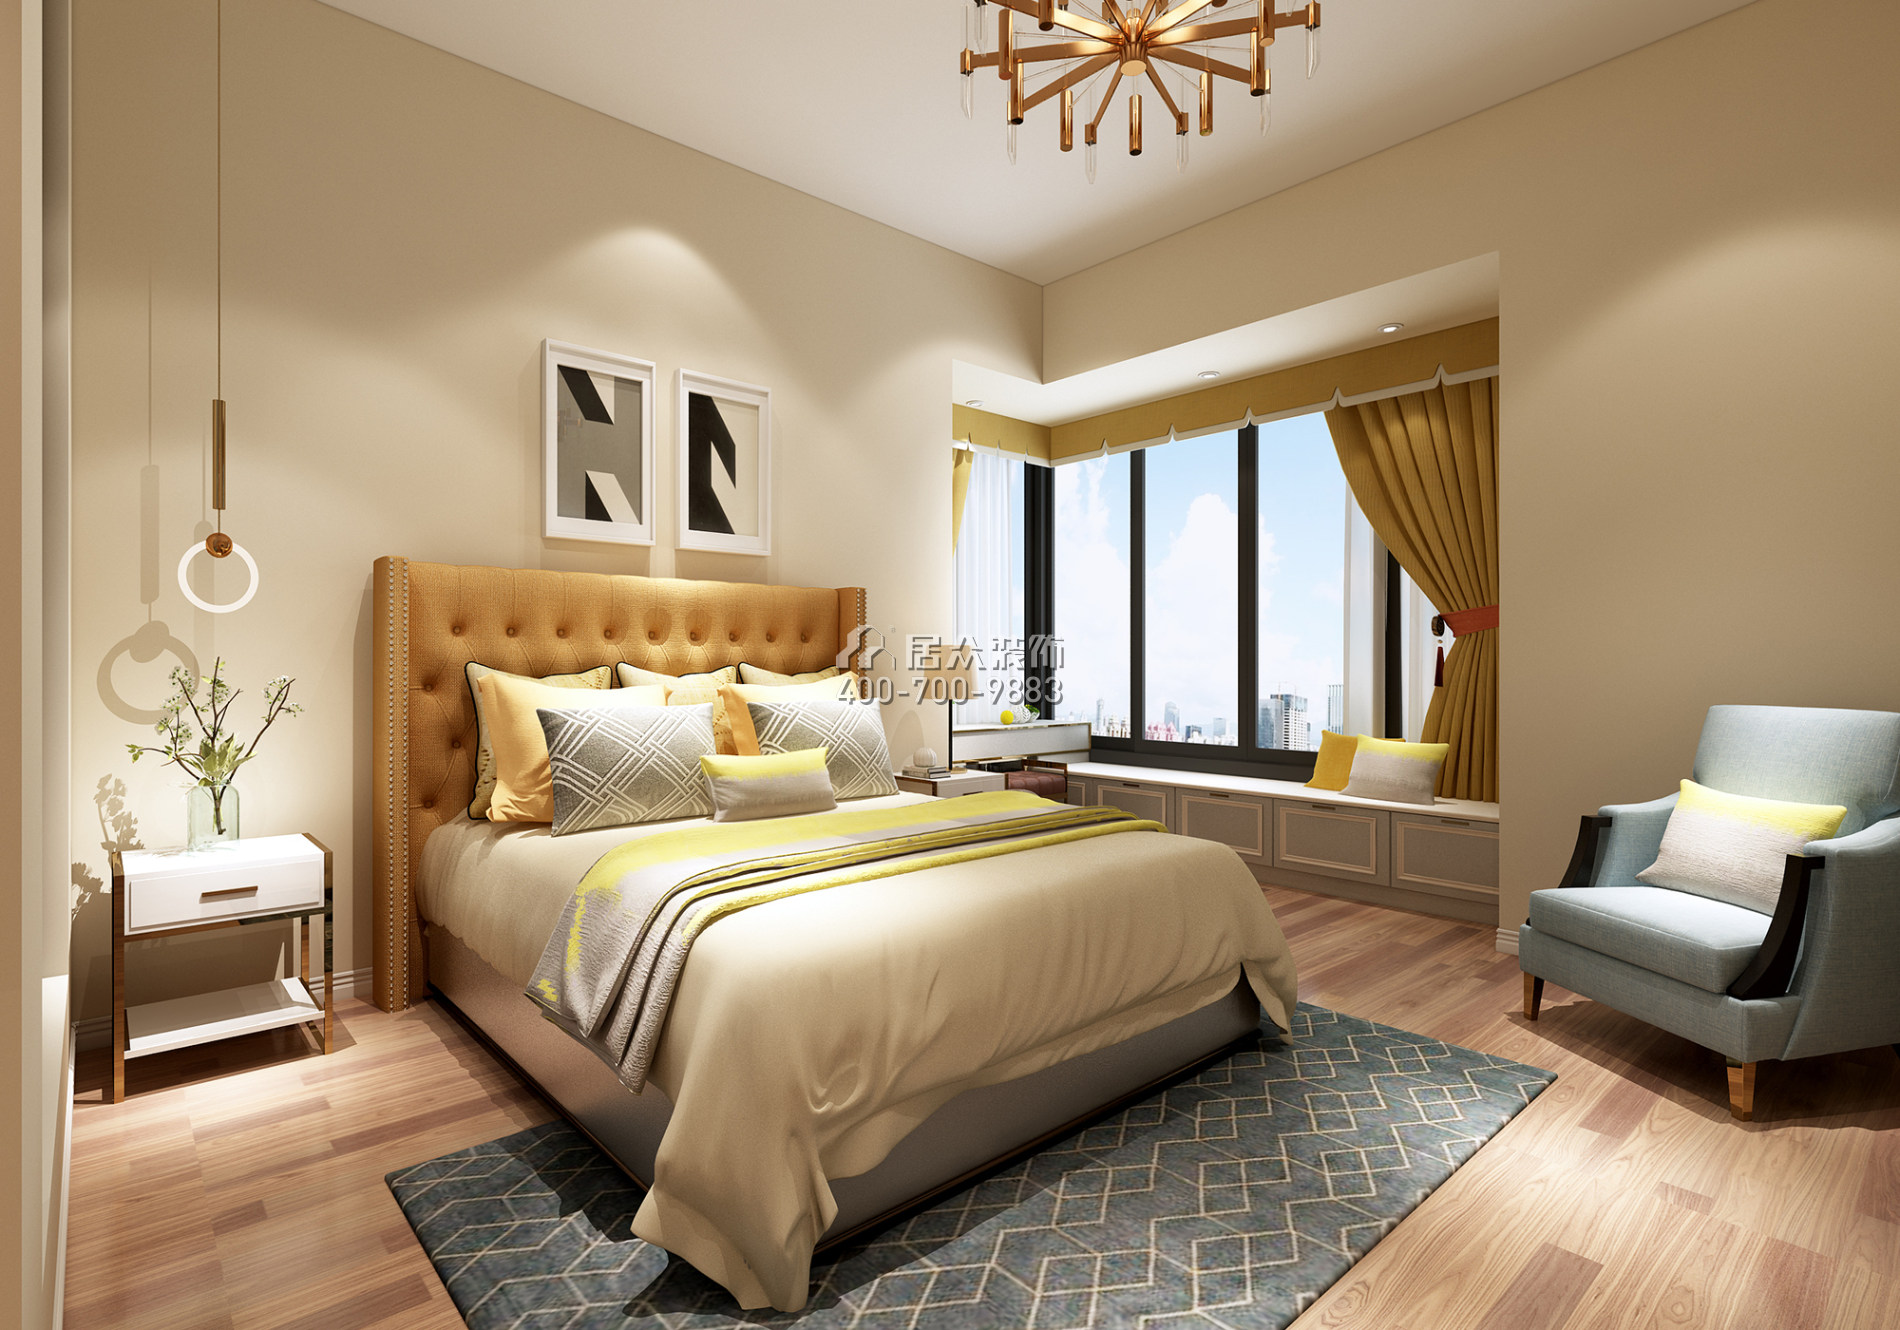 錦盛恒富得145平方米現代簡約風格平層戶型臥室裝修效果圖